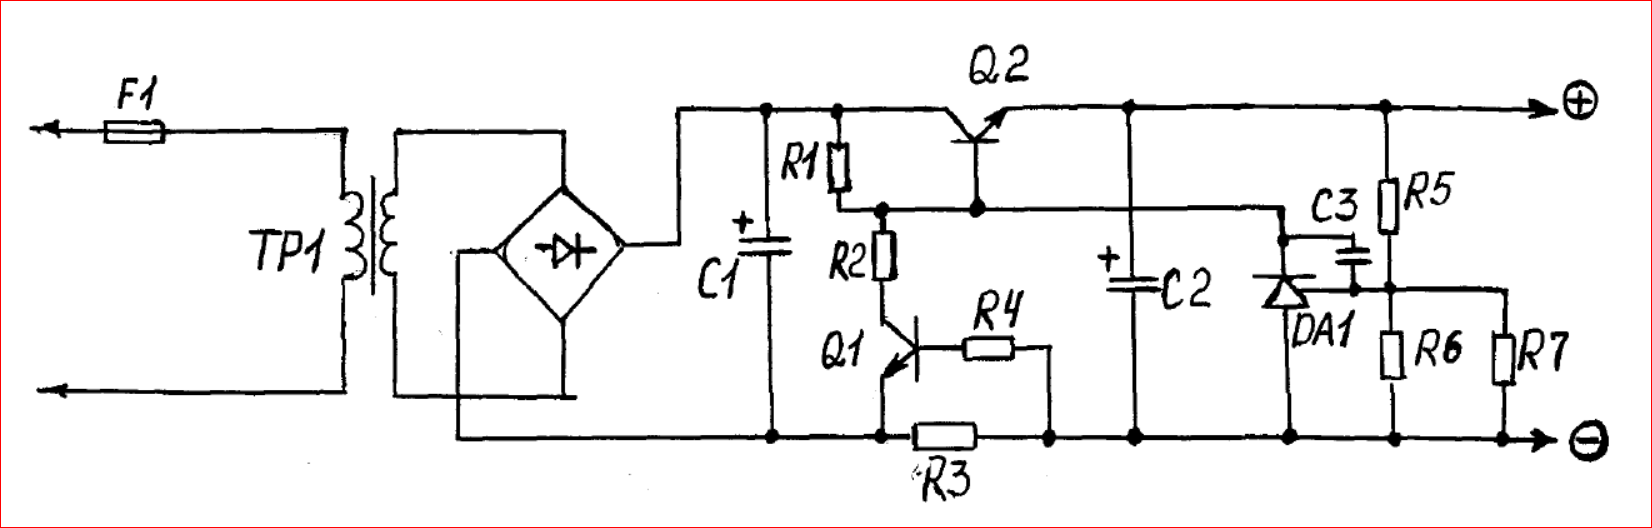 Транзисторный стабилизированный выпрямитель ТСТ-12-5 схема. Схема автомобильного зарядного устройства на полевом транзисторе. Автомобильное зарядное на полевом транзисторе схема. Схема выпрямителя с регулировкой напряжения на одном транзисторе.